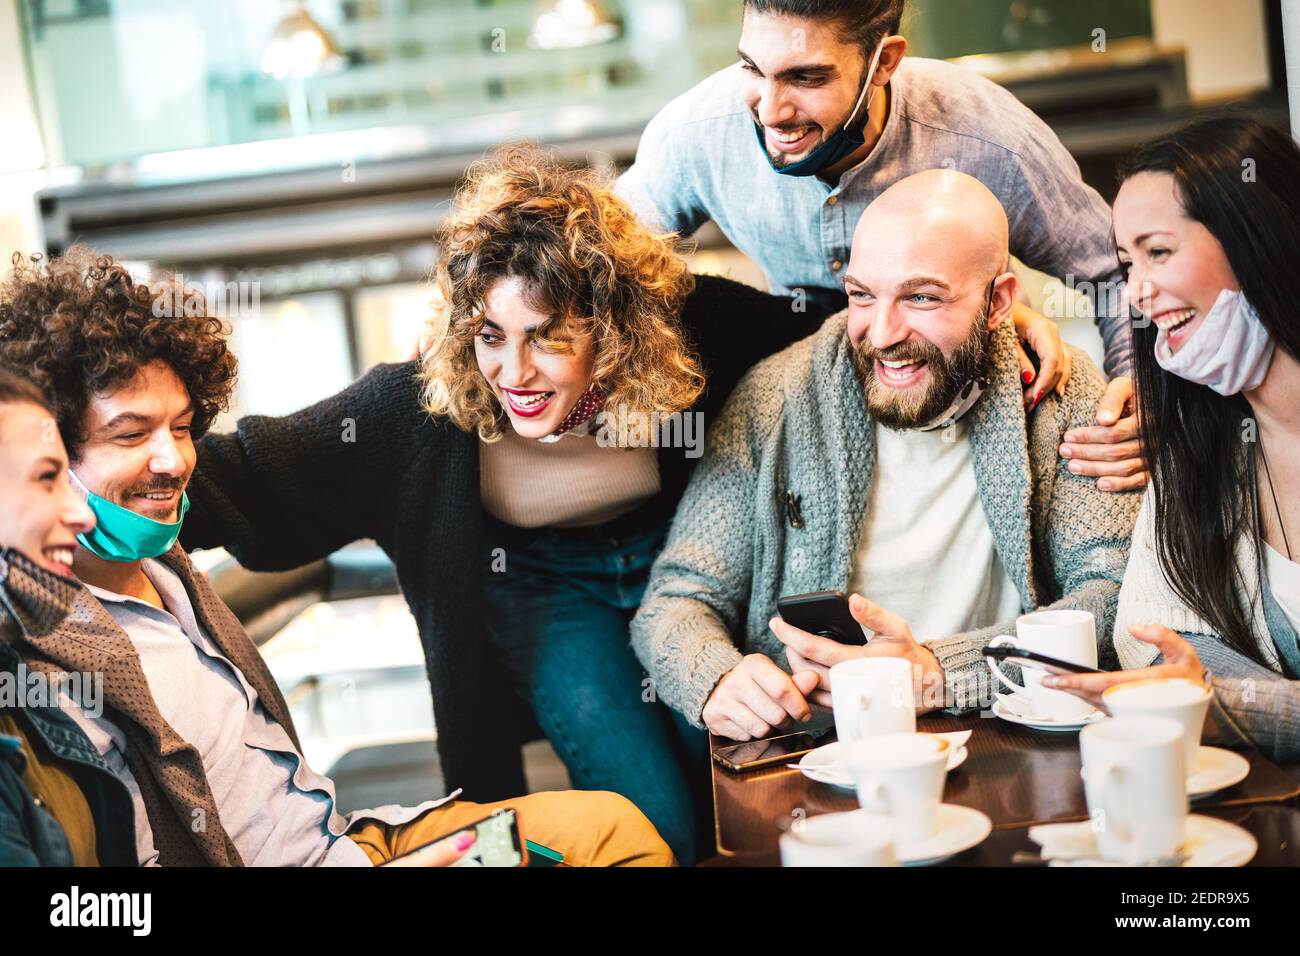 Les gens qui s'amusent à boire du cappuccino au café - jeunes amis Parler ensemble à la cafétéria du restaurant - Nouveau concept de rassemblement normal Banque D'Images